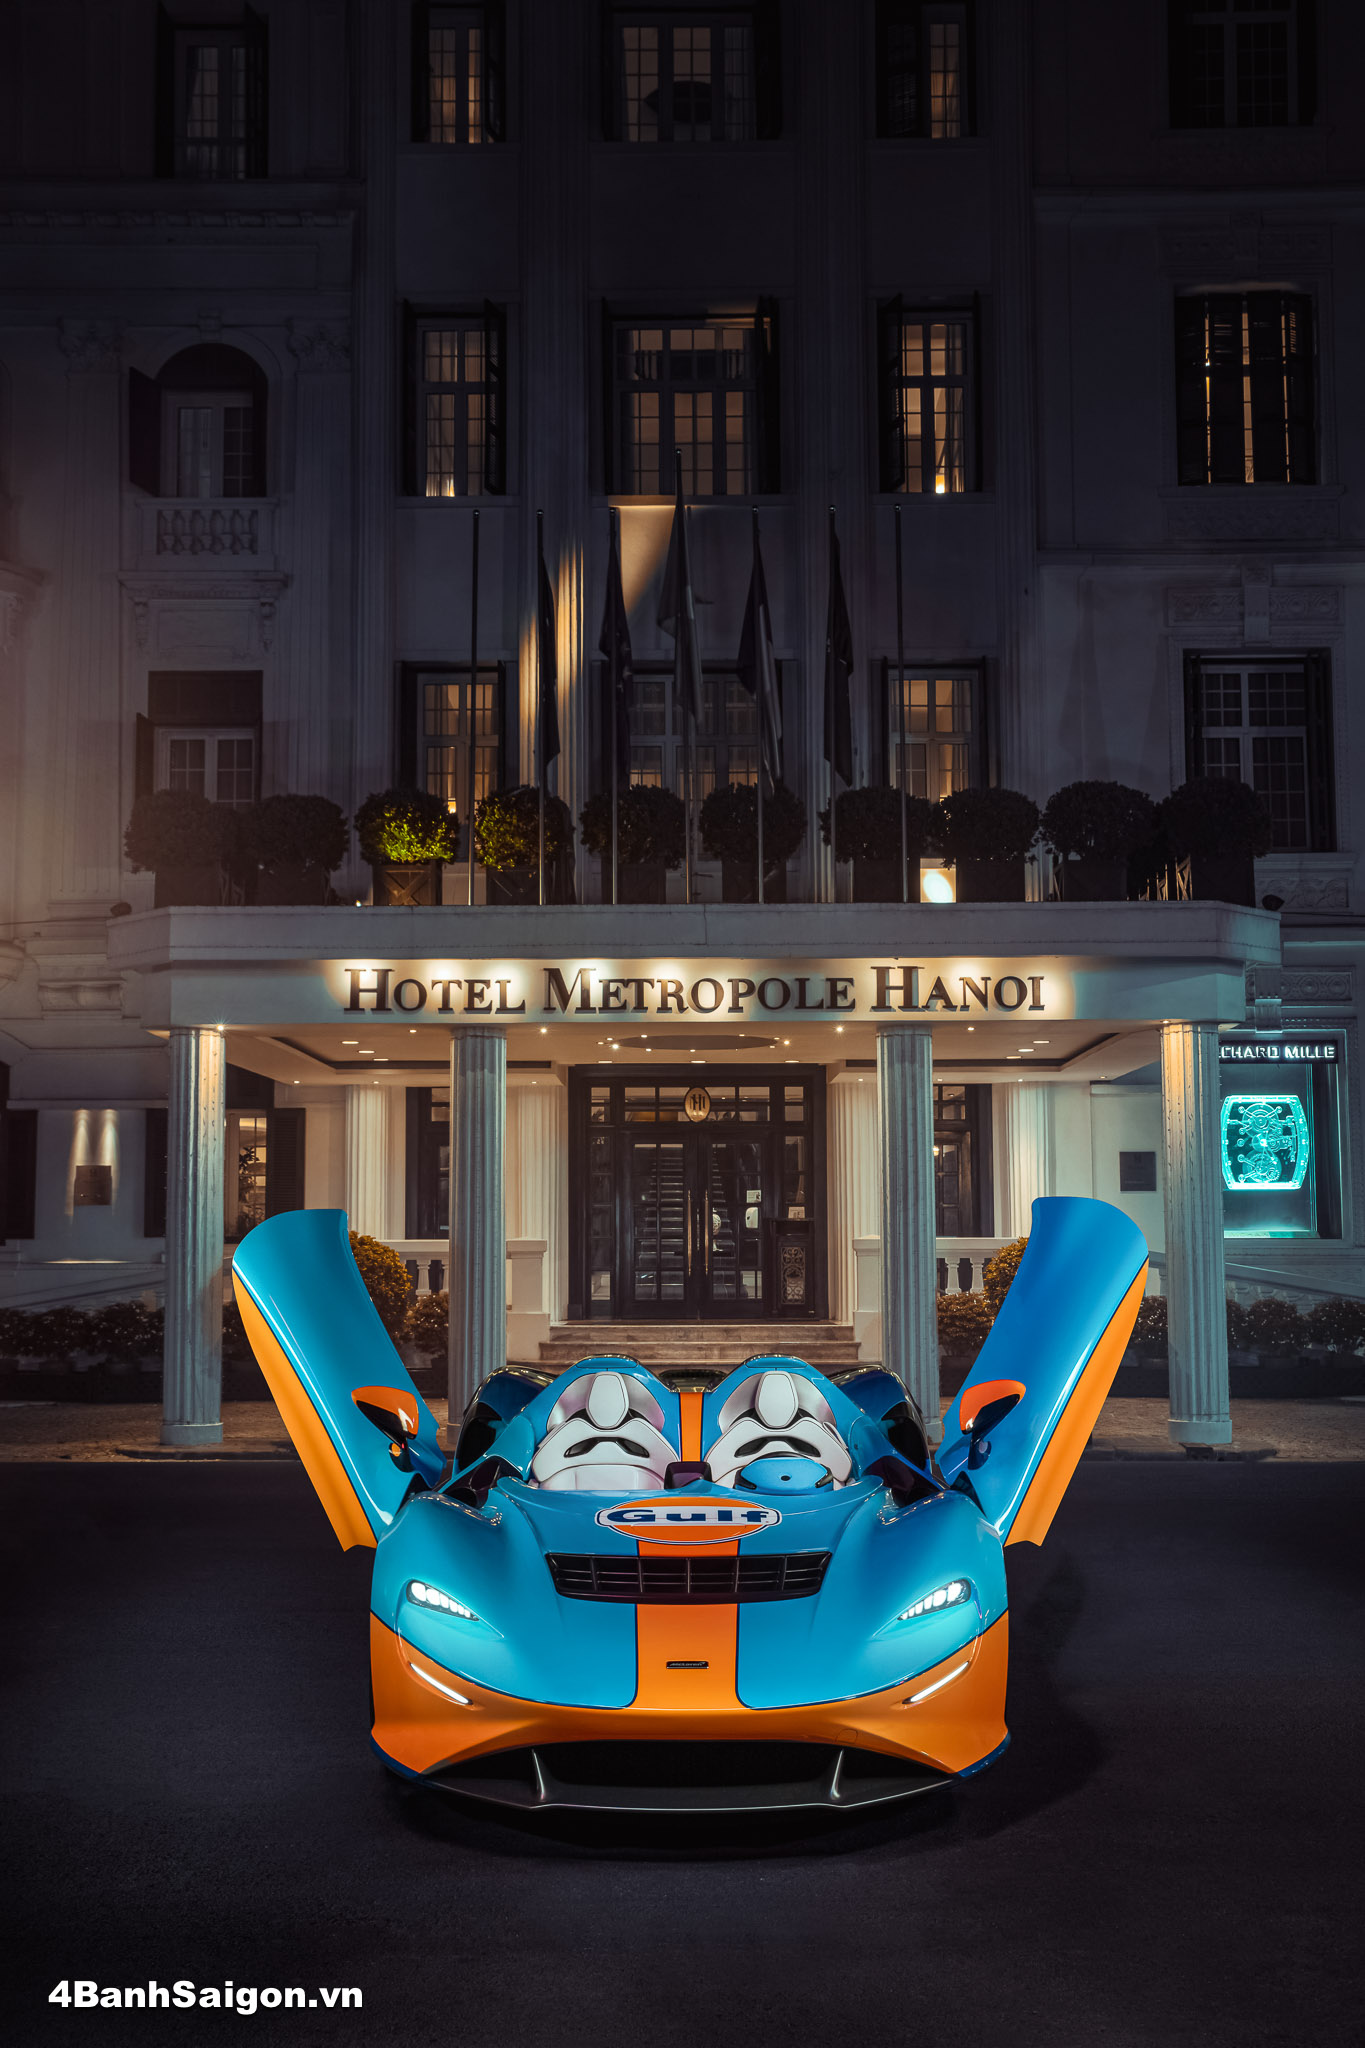 McLaren Elva “tạo dáng” trước khách sạn Sofitel Metropole, kiến trúc được mệnh danh là “bà đầm già” đã chứng kiến nhiều thăng trầm của thành phố hơn 100 năm qua. 